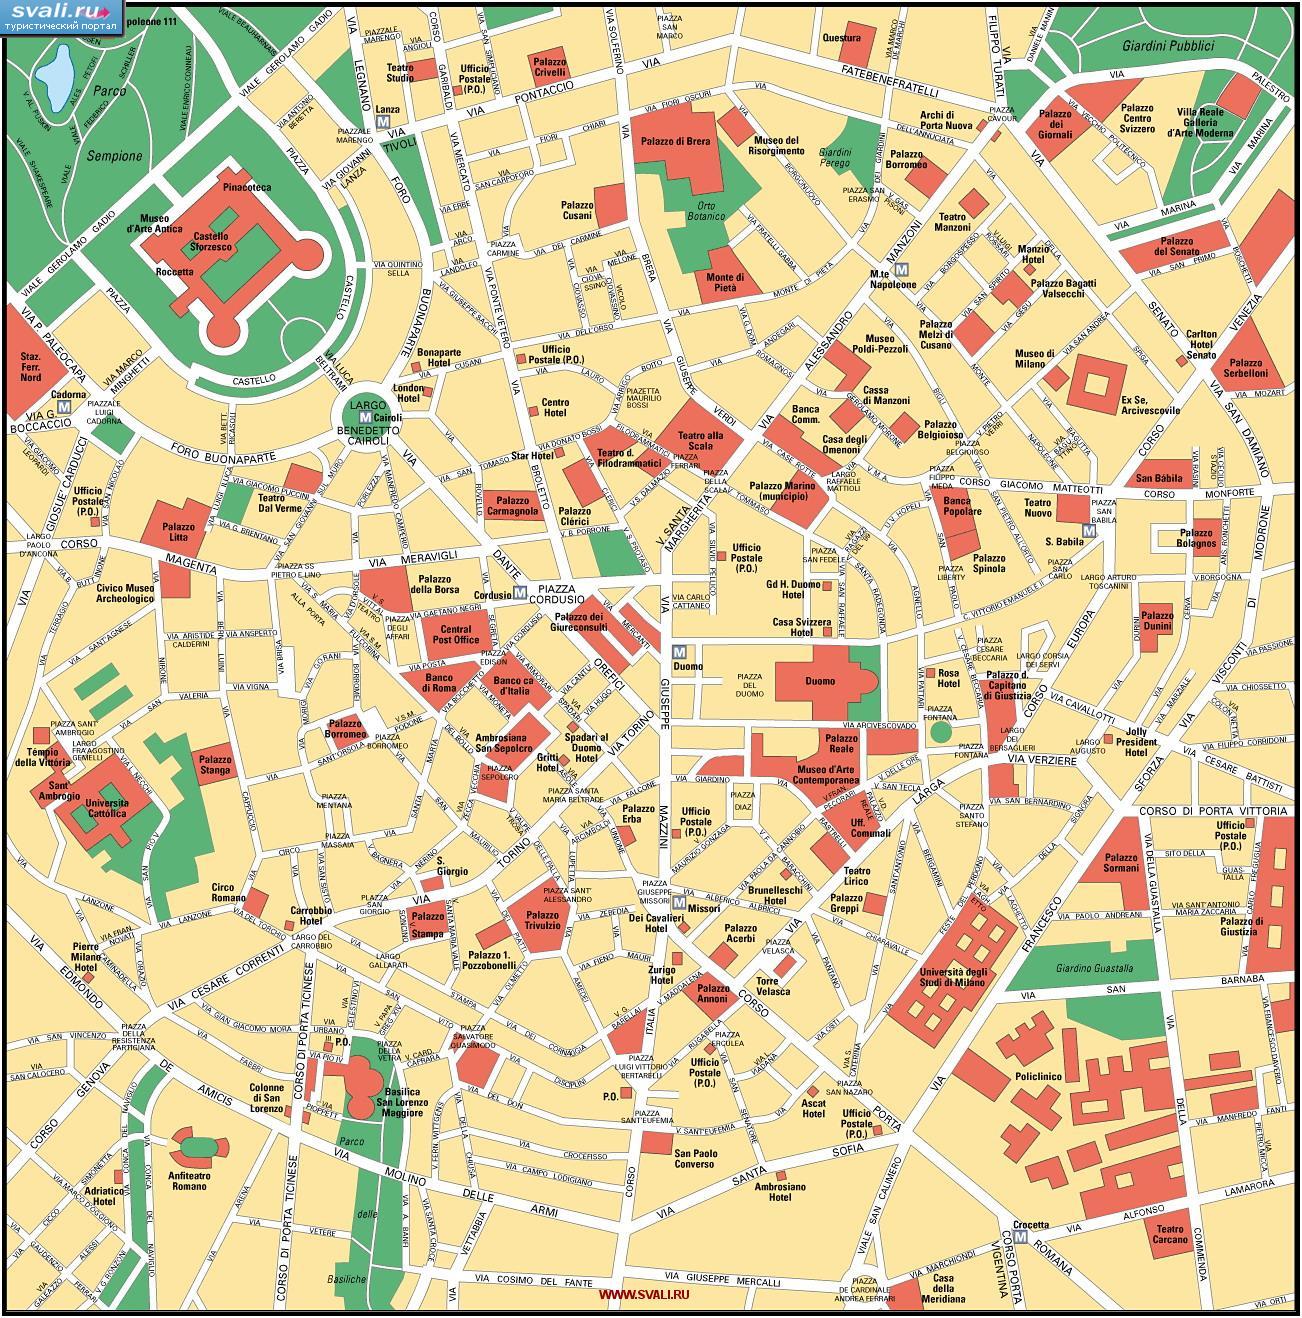 Туристическая карта центра Милана, Италия (итал.)